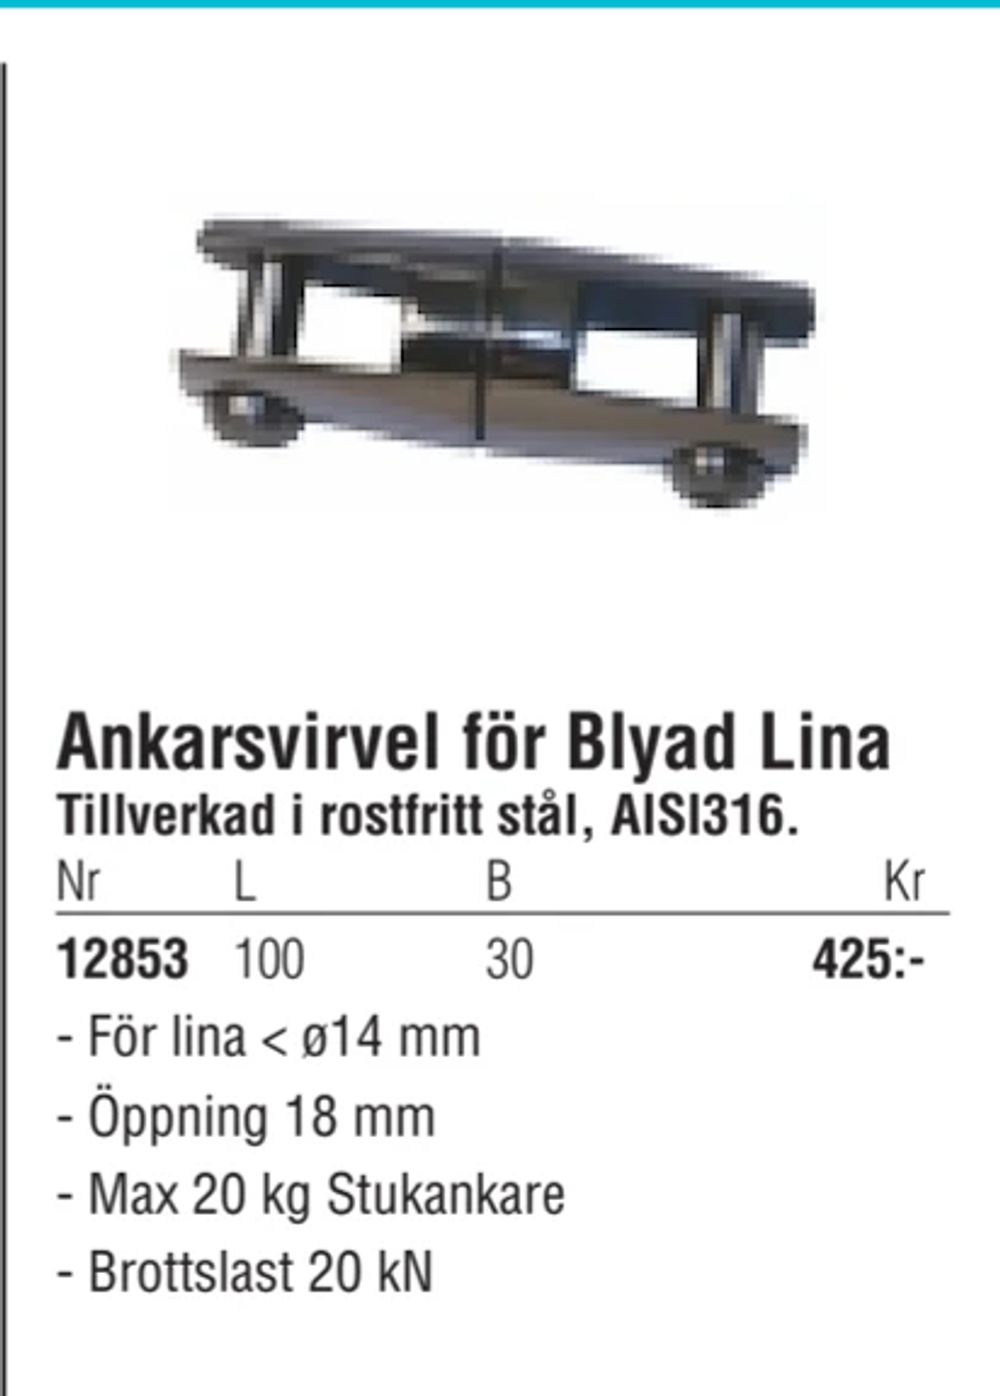 Erbjudanden på Ankarsvirvel för Blyad Lina från Erlandsons Brygga för 425 kr